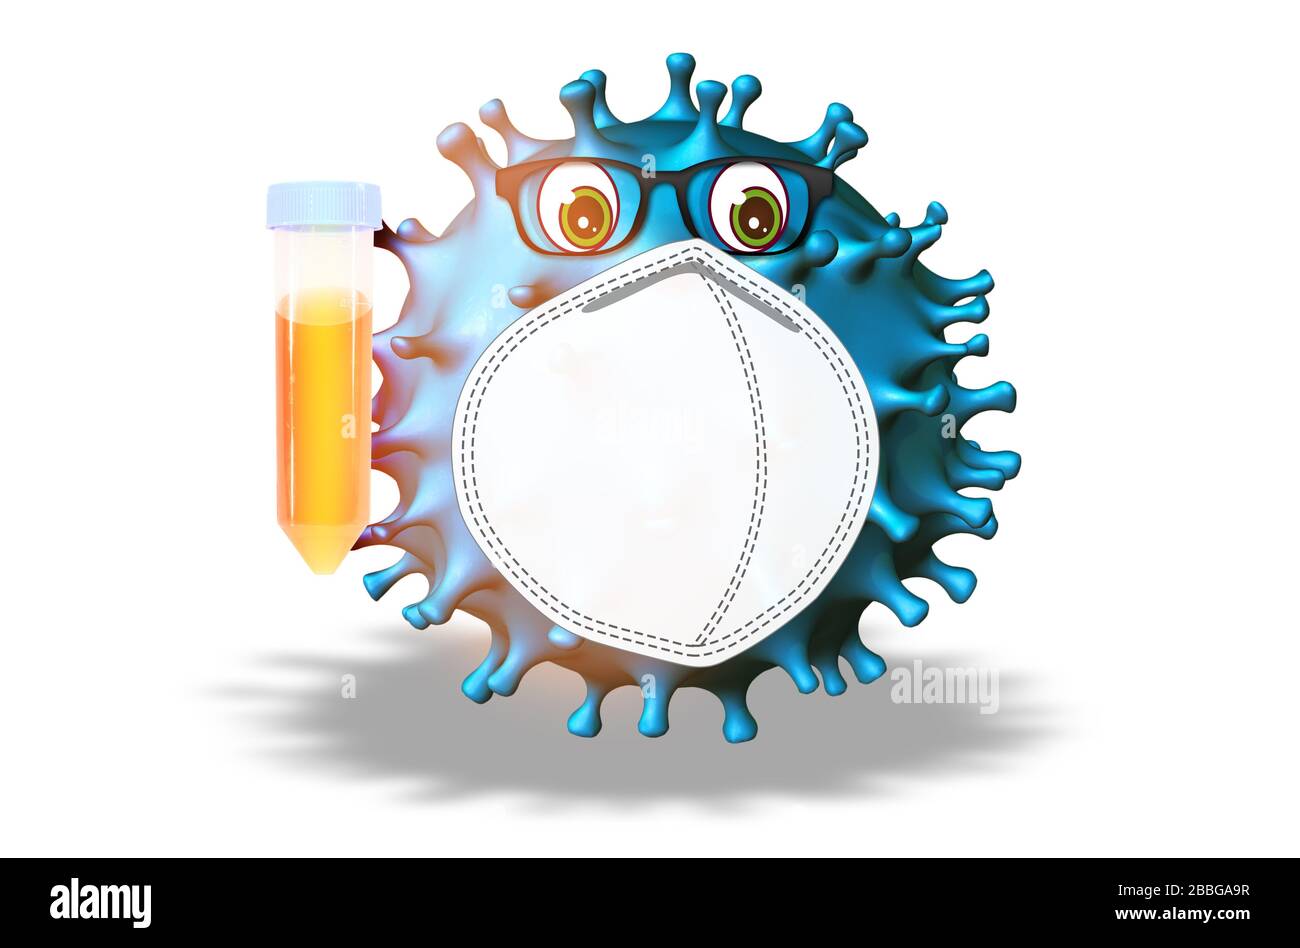 Illustration de comics du virus Covid-19 du coronavirus qui contient un tube à essai sur fond blanc. Concept de tests antiviraux et de recherche scientifique contre Banque D'Images